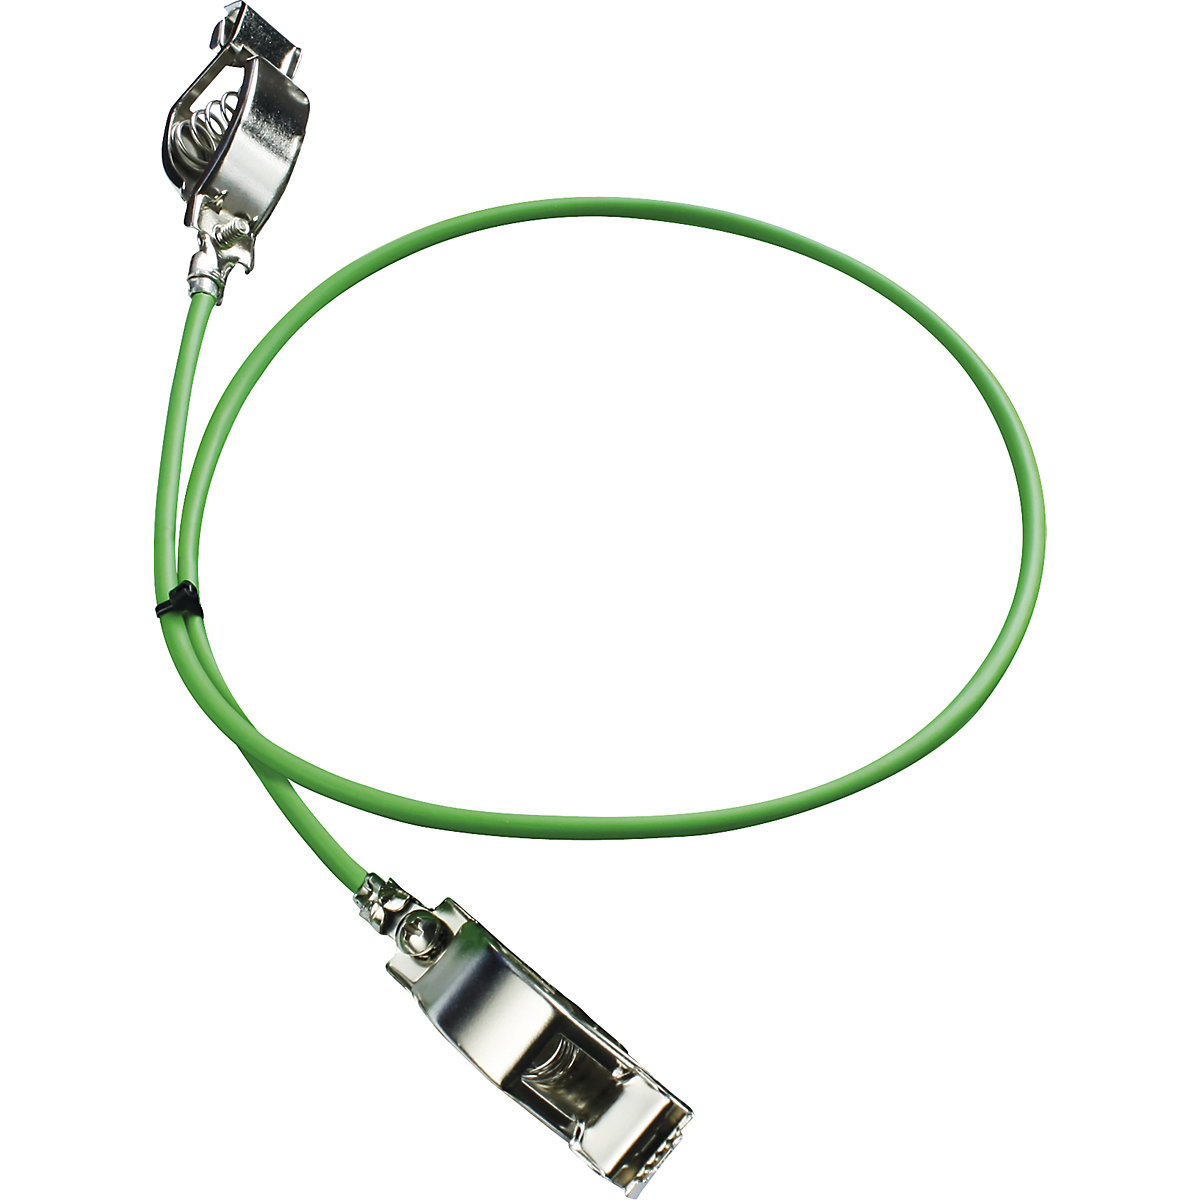 Uzemňovací kabel – Jessberger, jako vyrovnání potenciálů, bal.j. 5 ks, délka 2 m-4